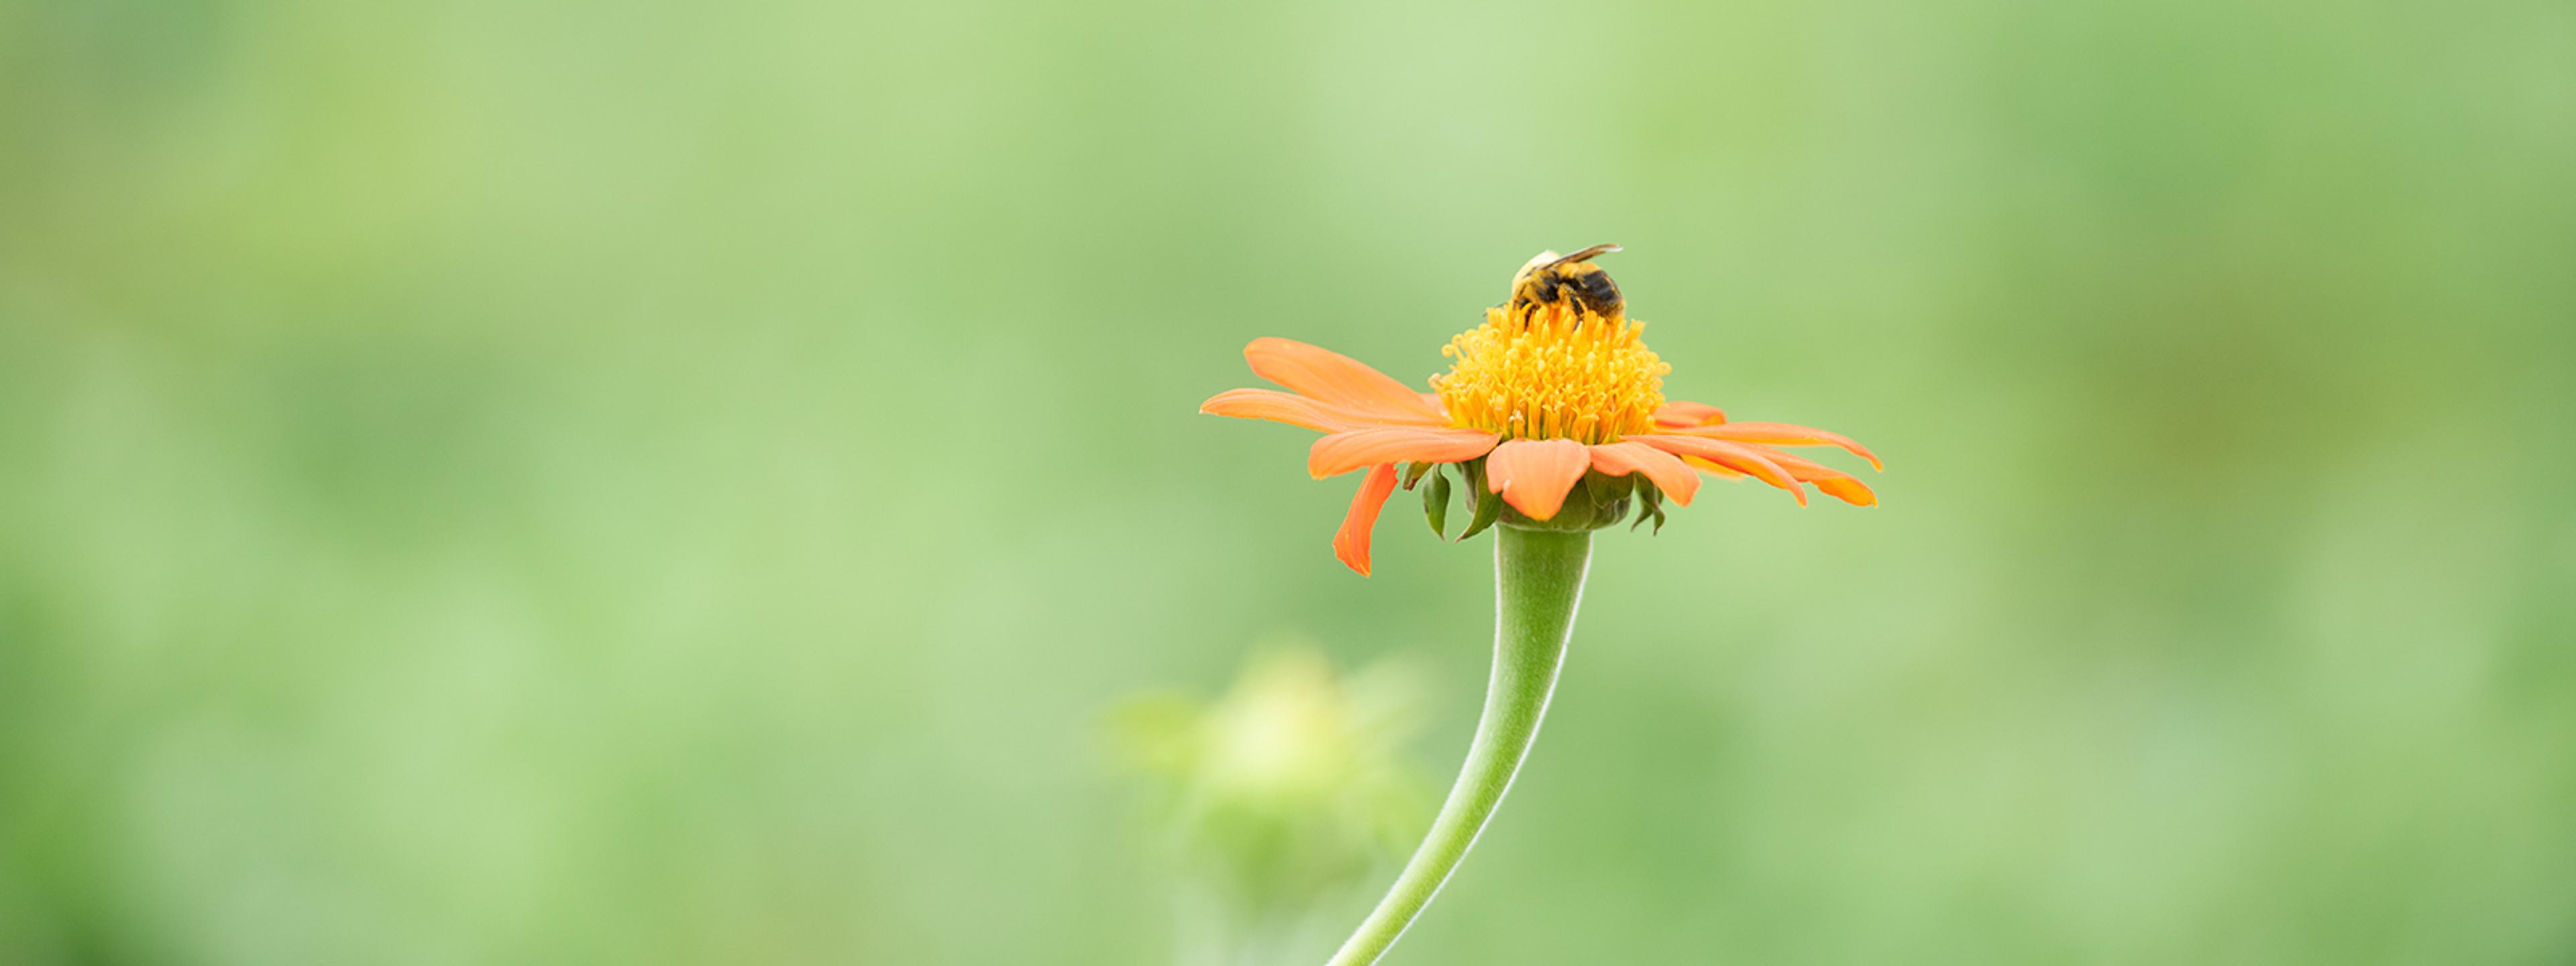 Jessica Shade, Ph.D. discusses pollinators.